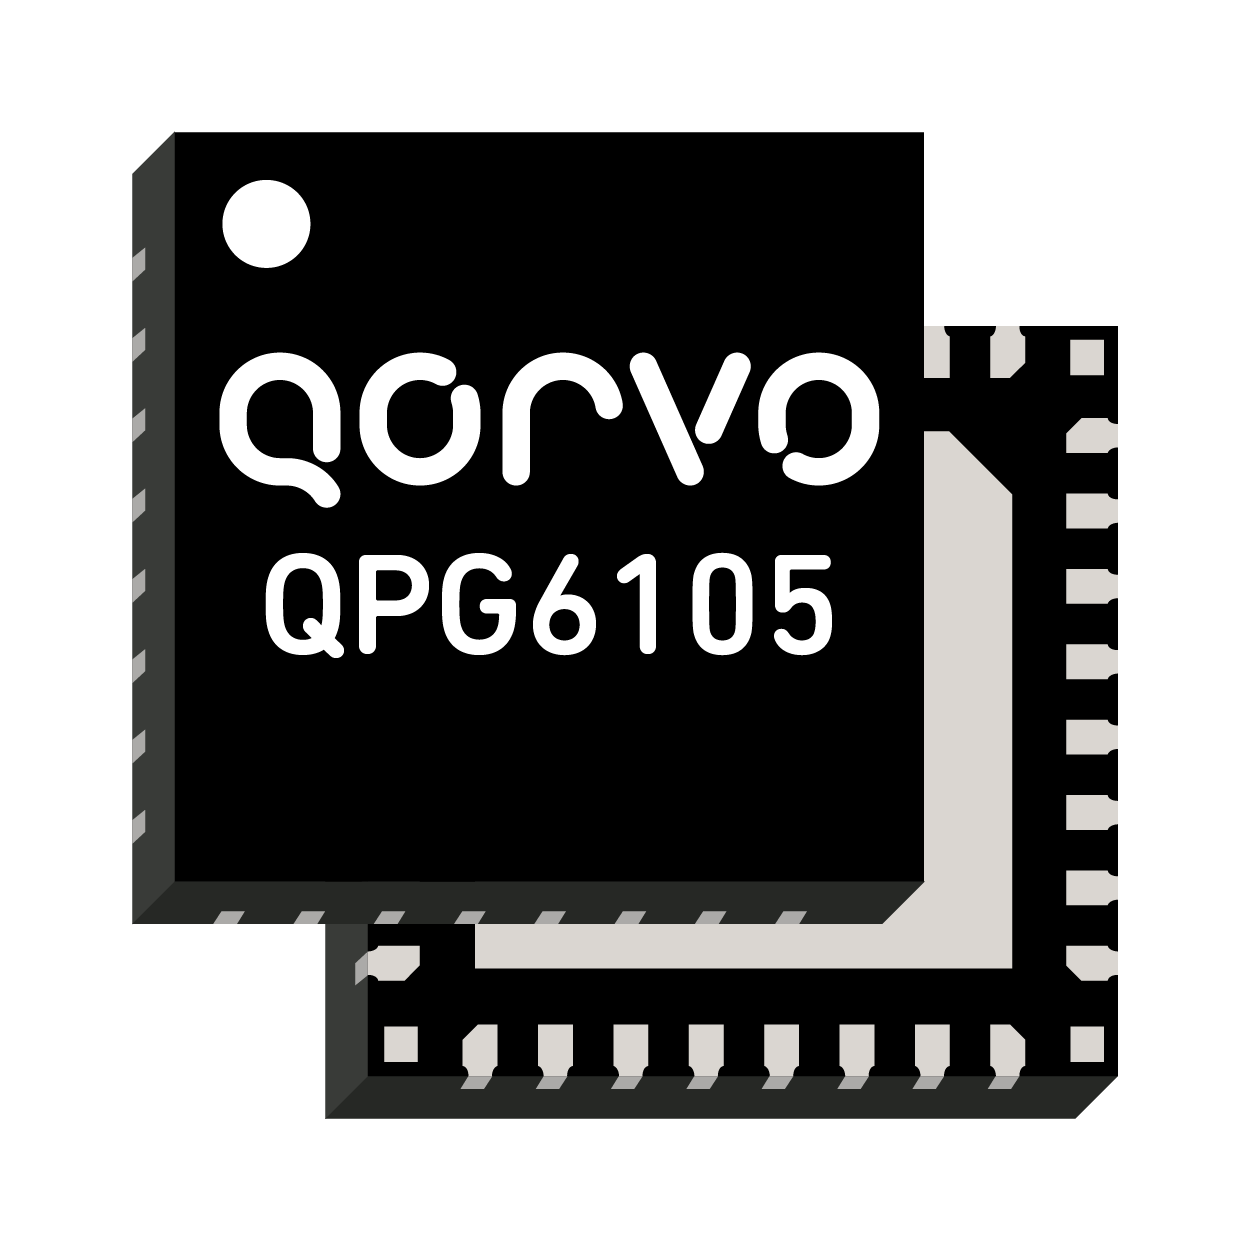 Qorvo QPG6105